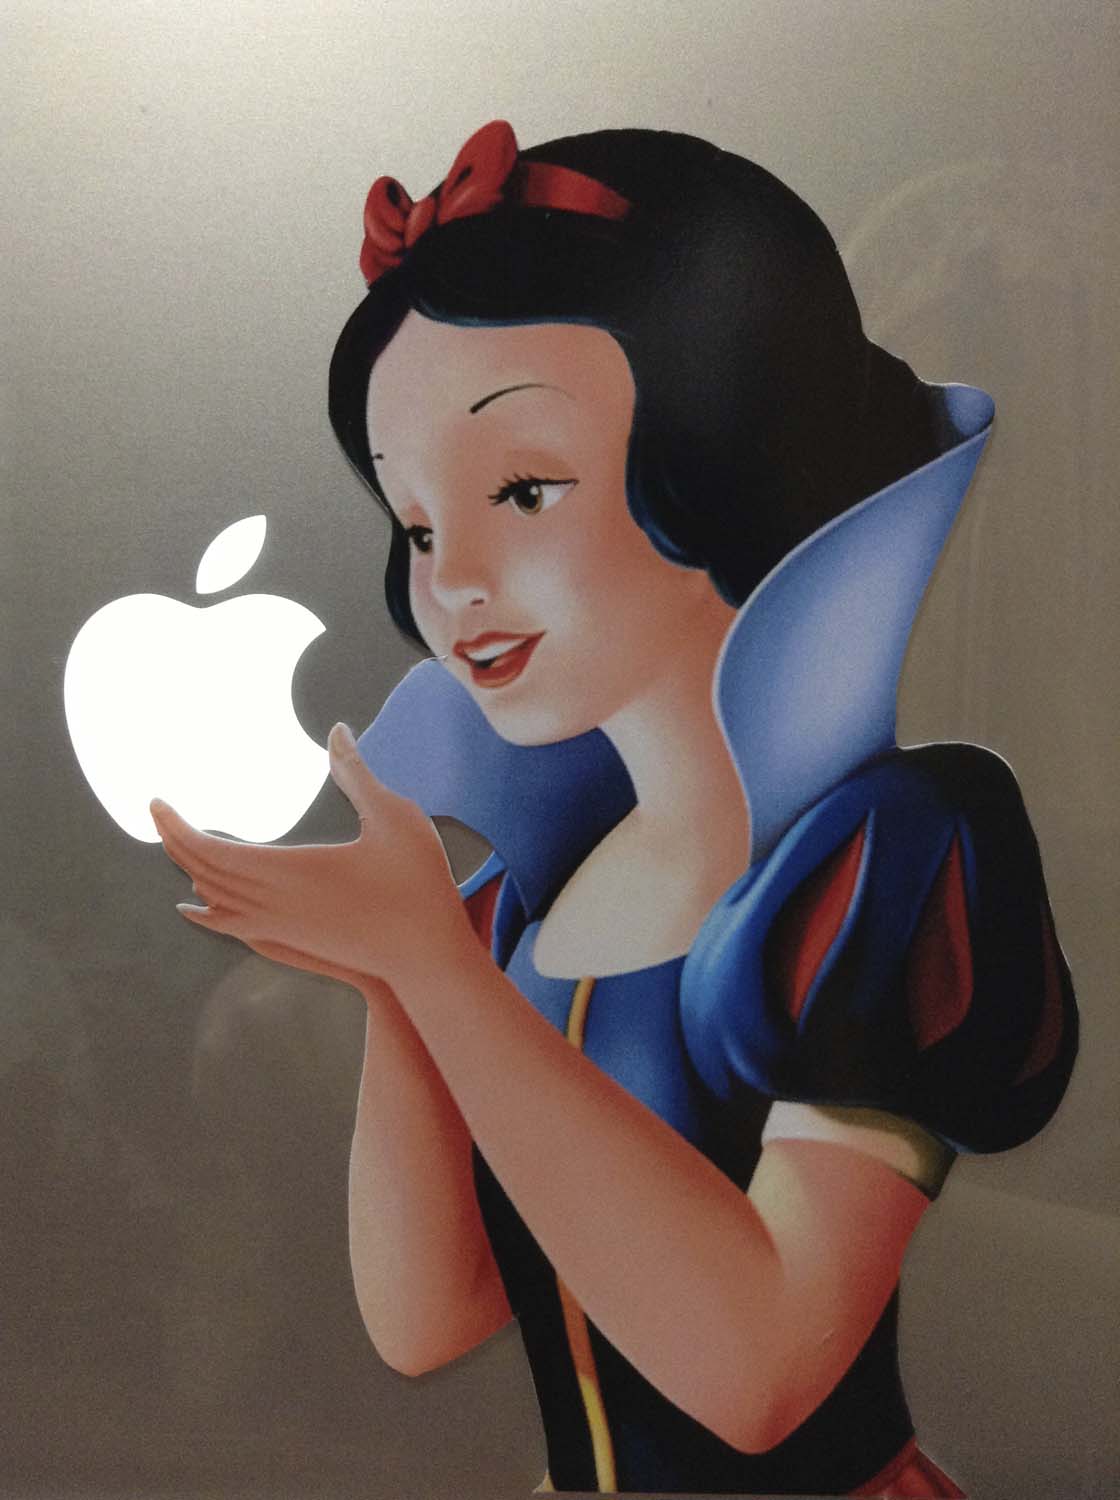 楽天市場 マックブック Ipad に りんごの部分に合わせて貼る 白雪姫のステッカー 自分好みのmacにアレンジ Mac マック 白雪姫 シール デカール アップル マーク ステッカー 林檎 デザイン Ipad Macbook Pro Air リンゴの部分に合わせて貼るシール 11 13 15 インチ